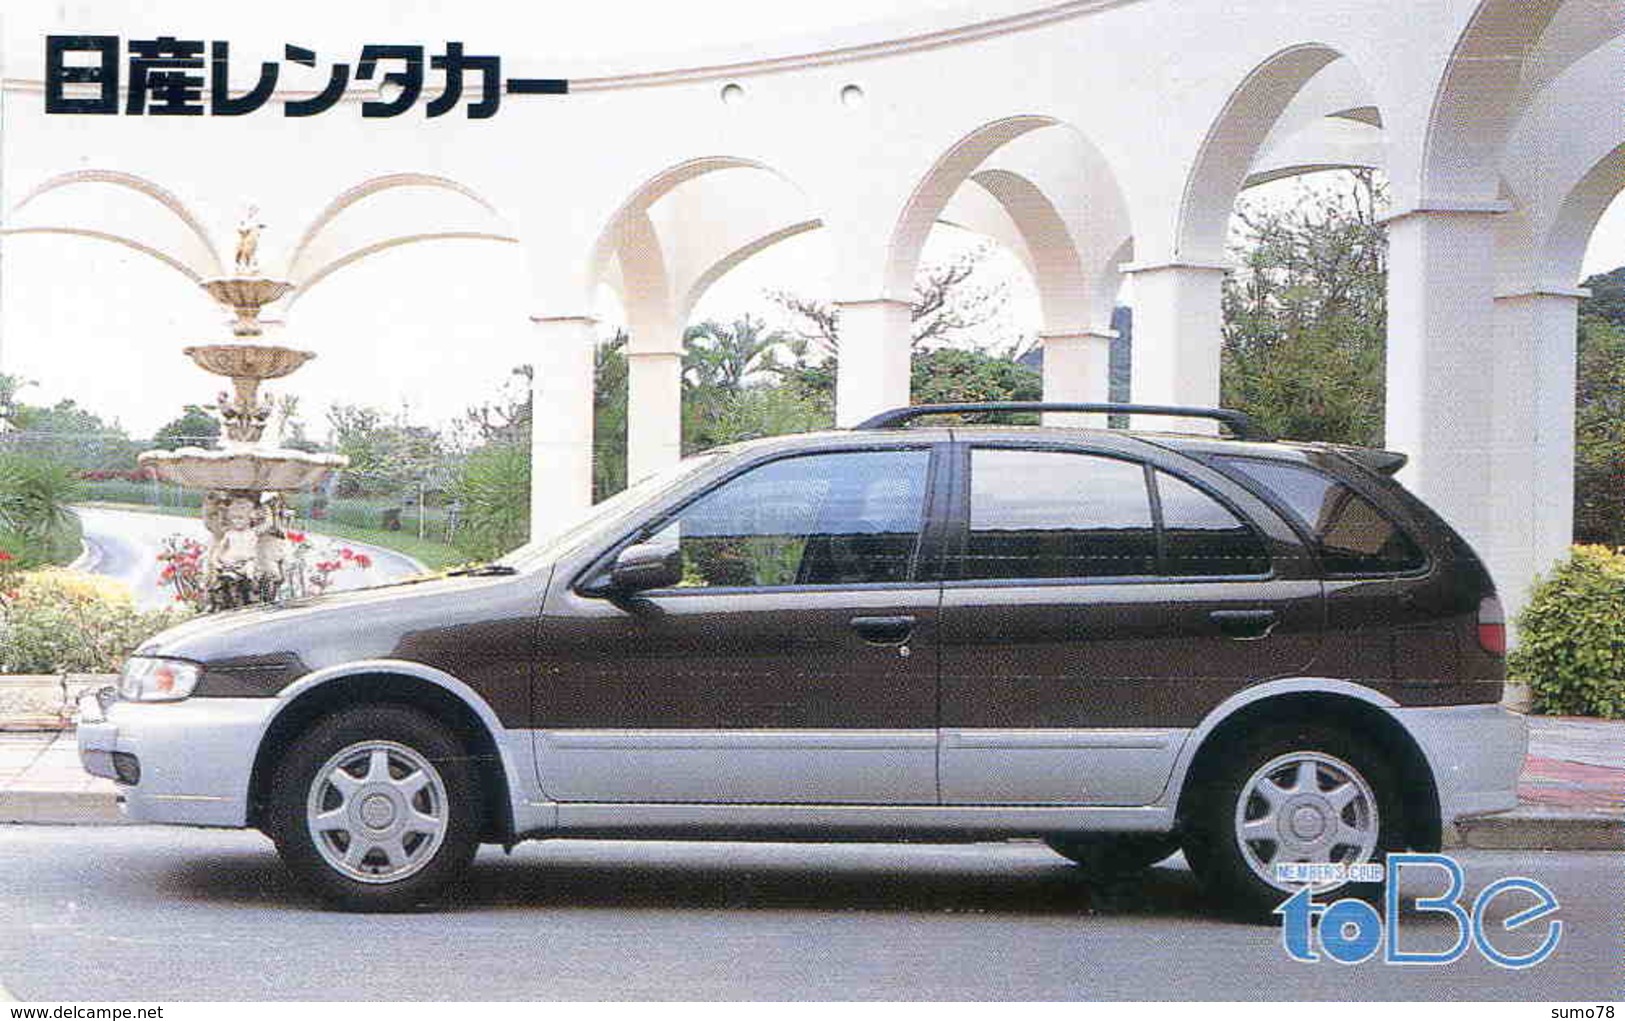 NISSAN - TELECARTE JAPON  - VOITURE - AUTOMOBILE - CAR - Cars